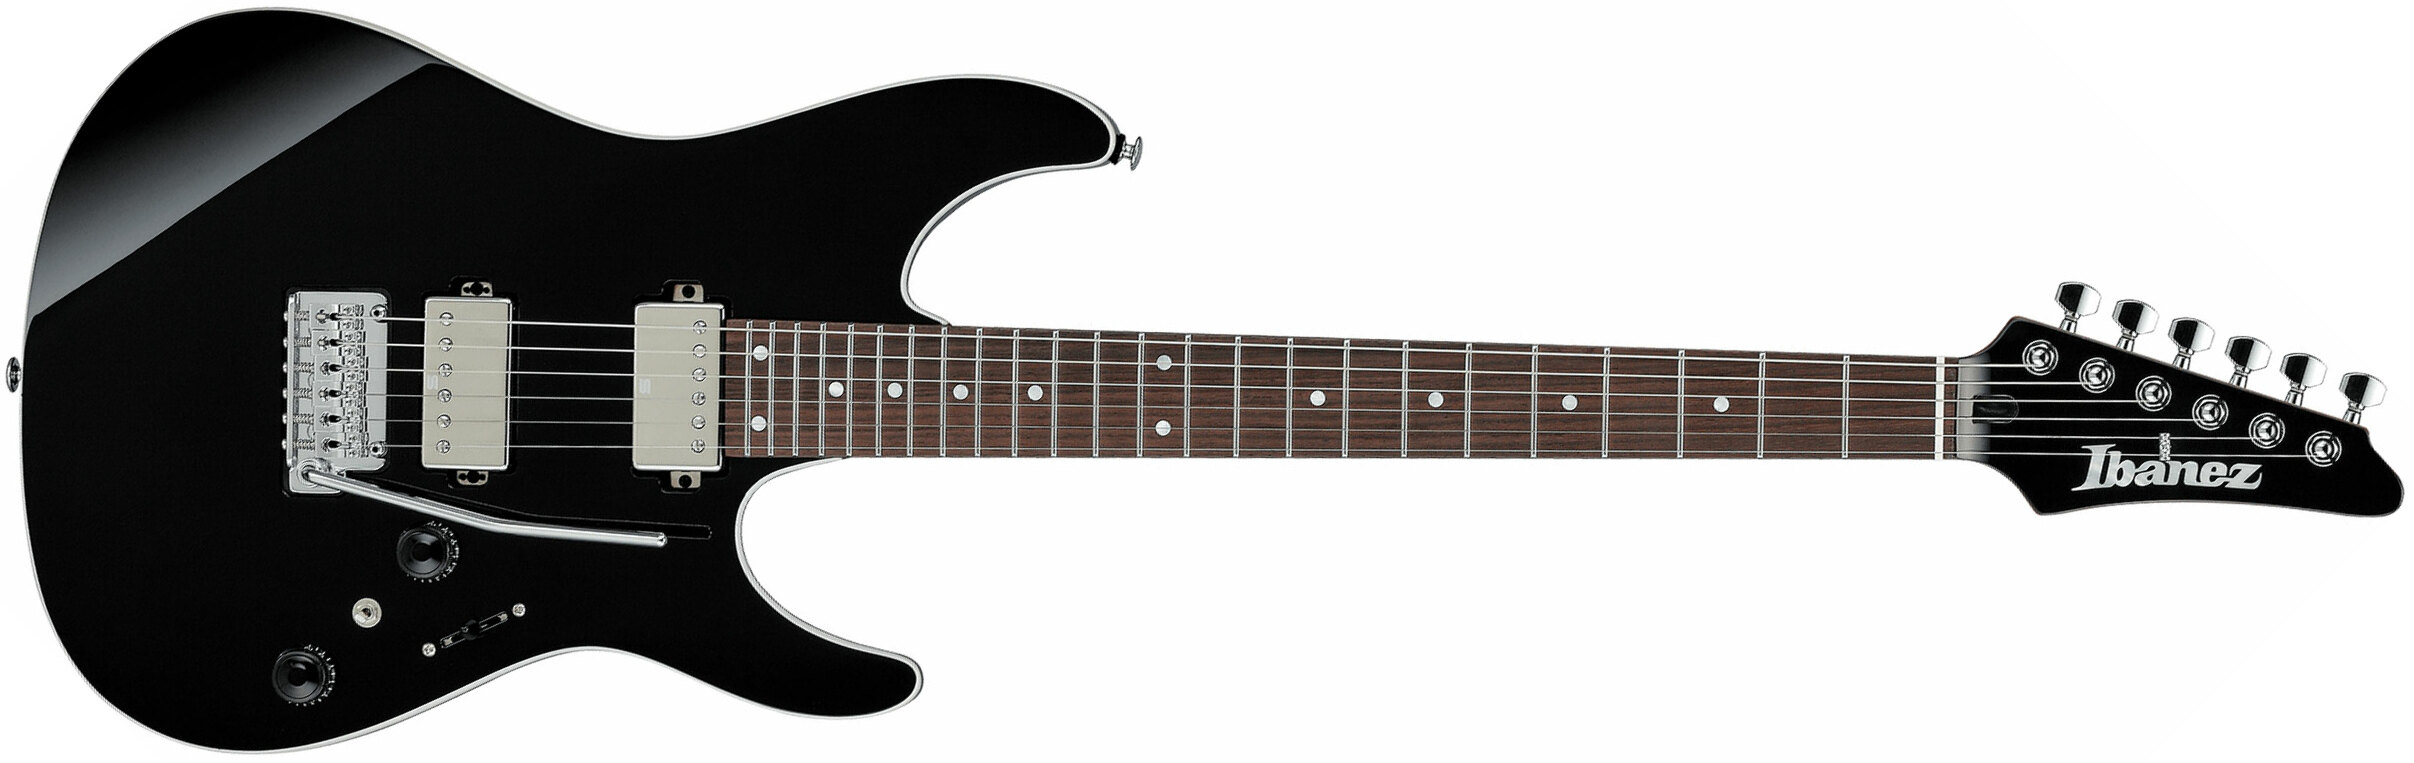 Ibanez Az42p1 Bk  Premium 2h Seymour Duncan Trem Rw - Black - Guitare Électrique Forme Str - Main picture